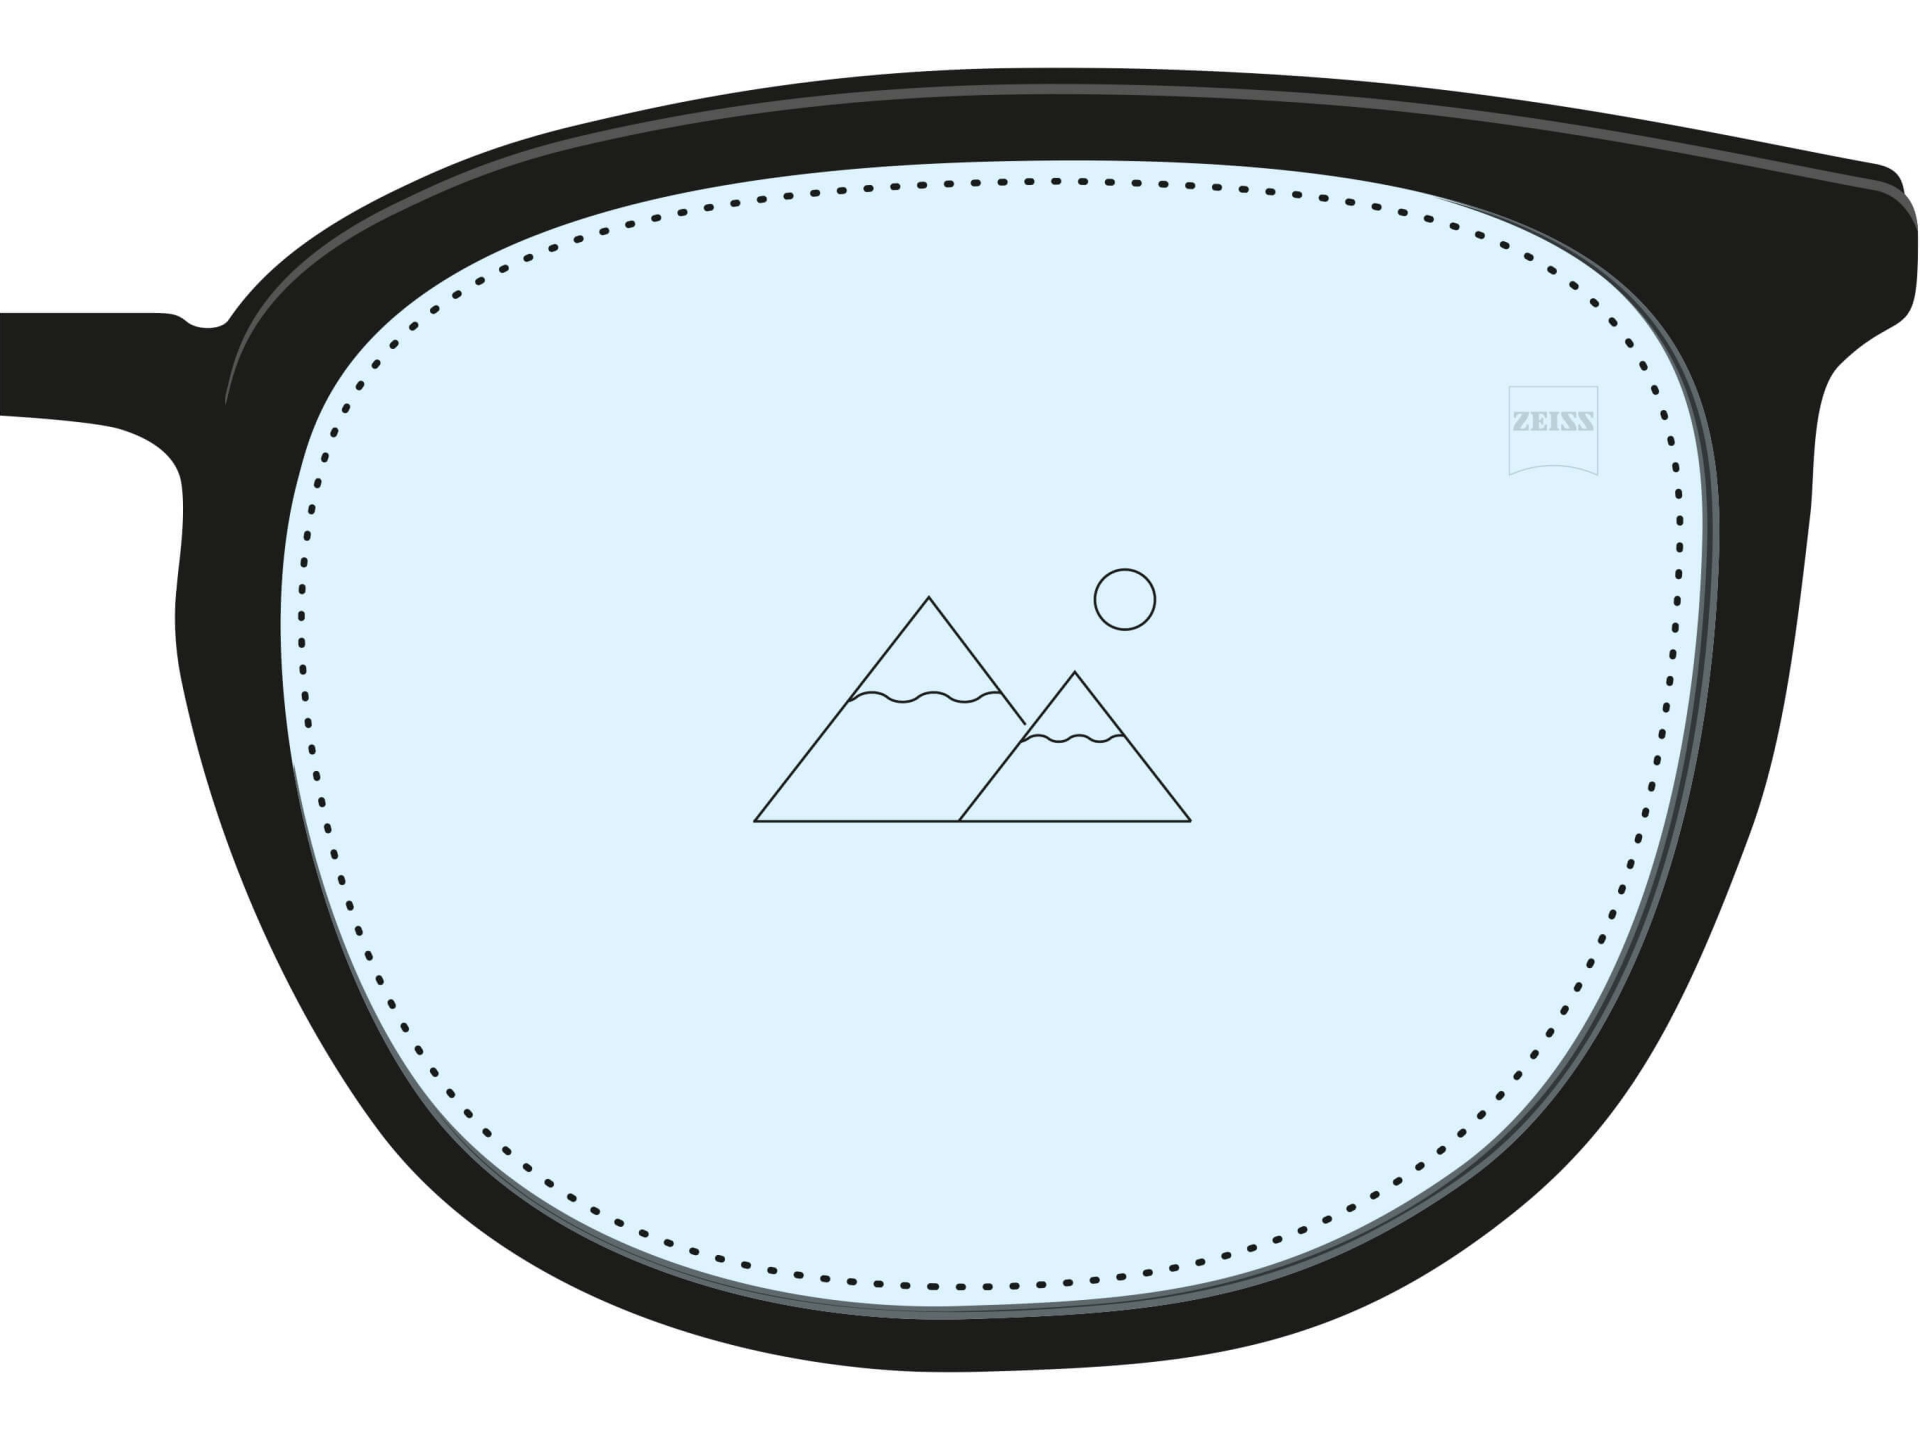 단초점 렌즈의 그림. 전체적으로 하늘색으로 채워져 있으며, 한 개의 아이콘은 하나의 거리에 대해 단 하나의 처방 도수가 적용되어 있음을 보여준다.